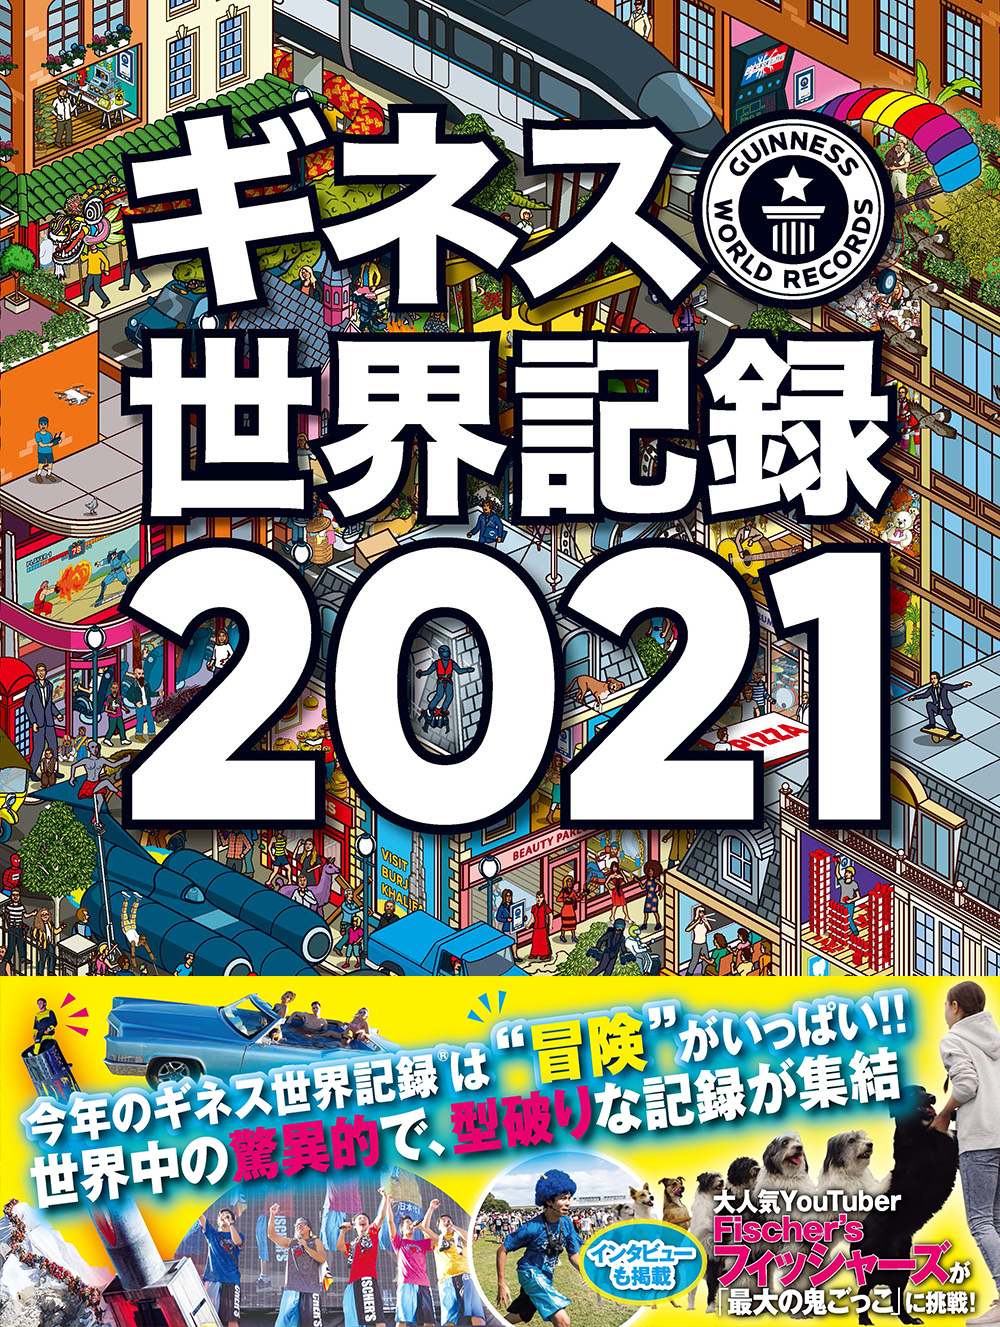 ギネス世界記録21 今年のテーマは 冒険 自宅で挑戦できる記録も多数掲載 株式会社kadokawaのプレスリリース